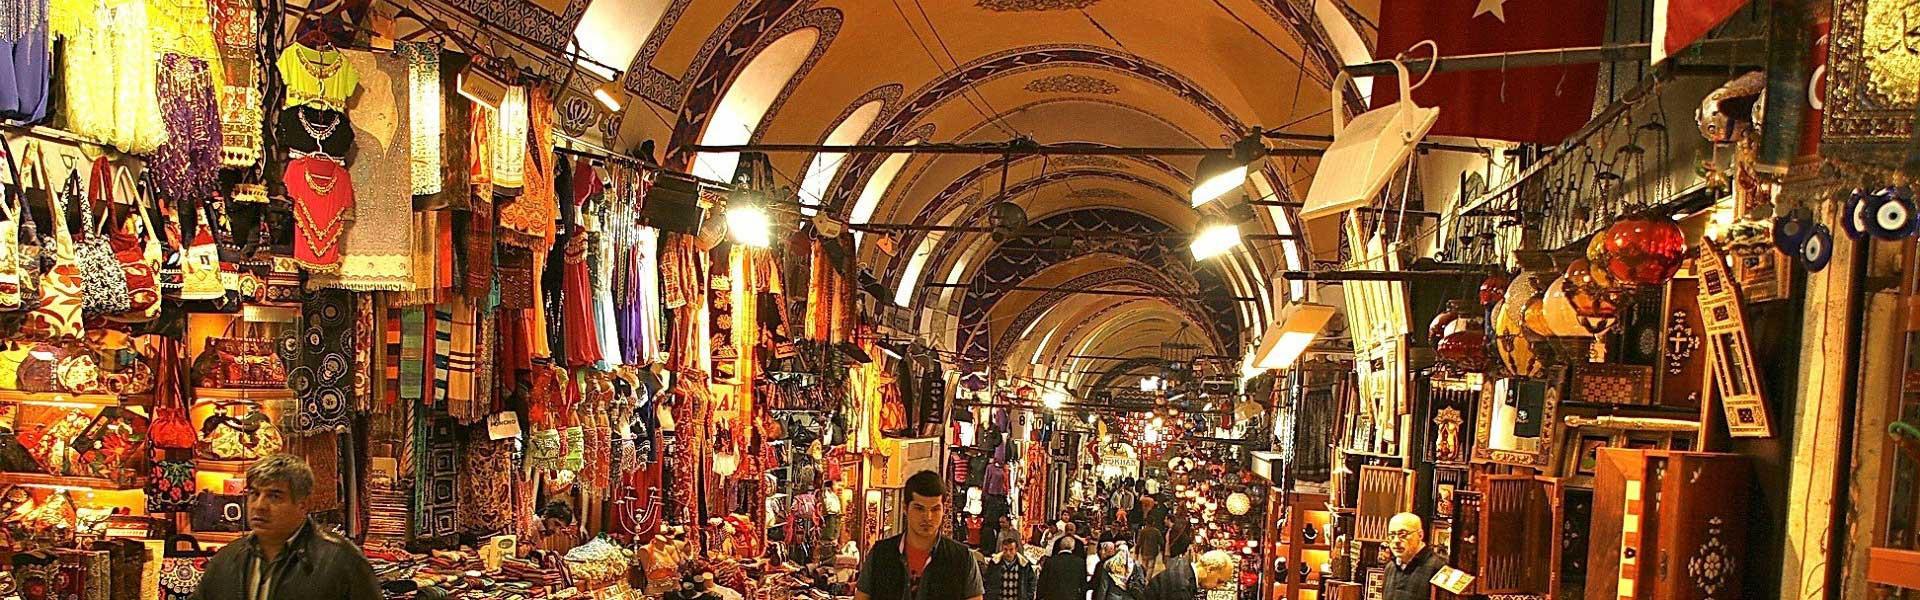 بازار بزرگ استانبول  Grand bazaar Istanbul